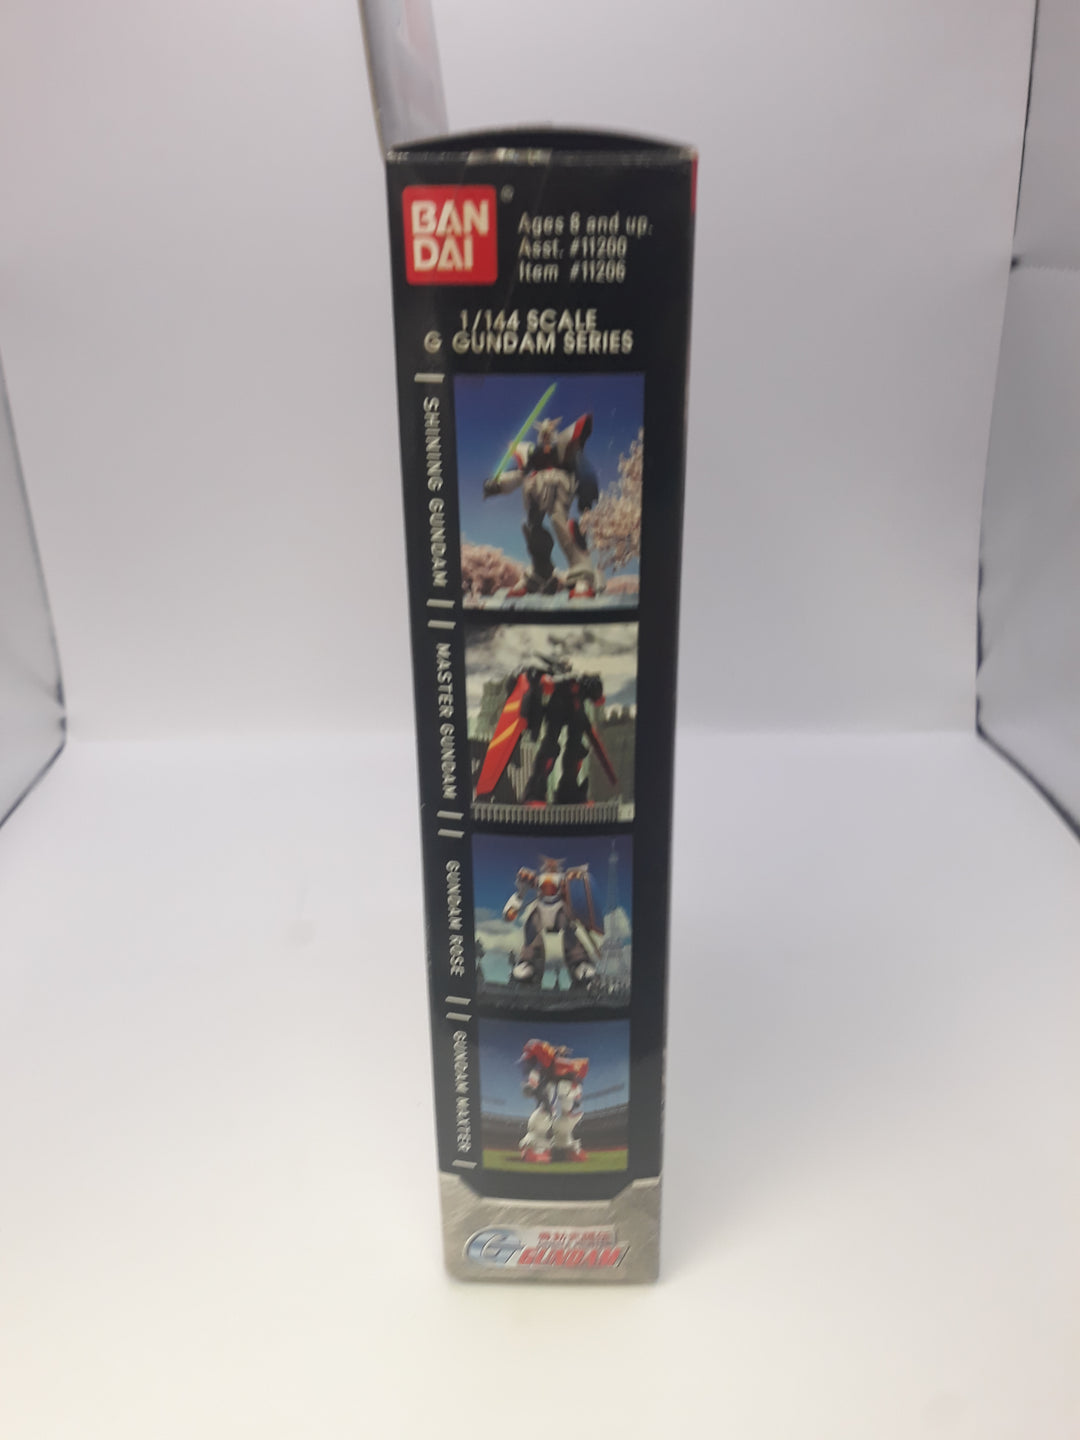 1994 Burning Gundam Model Kit